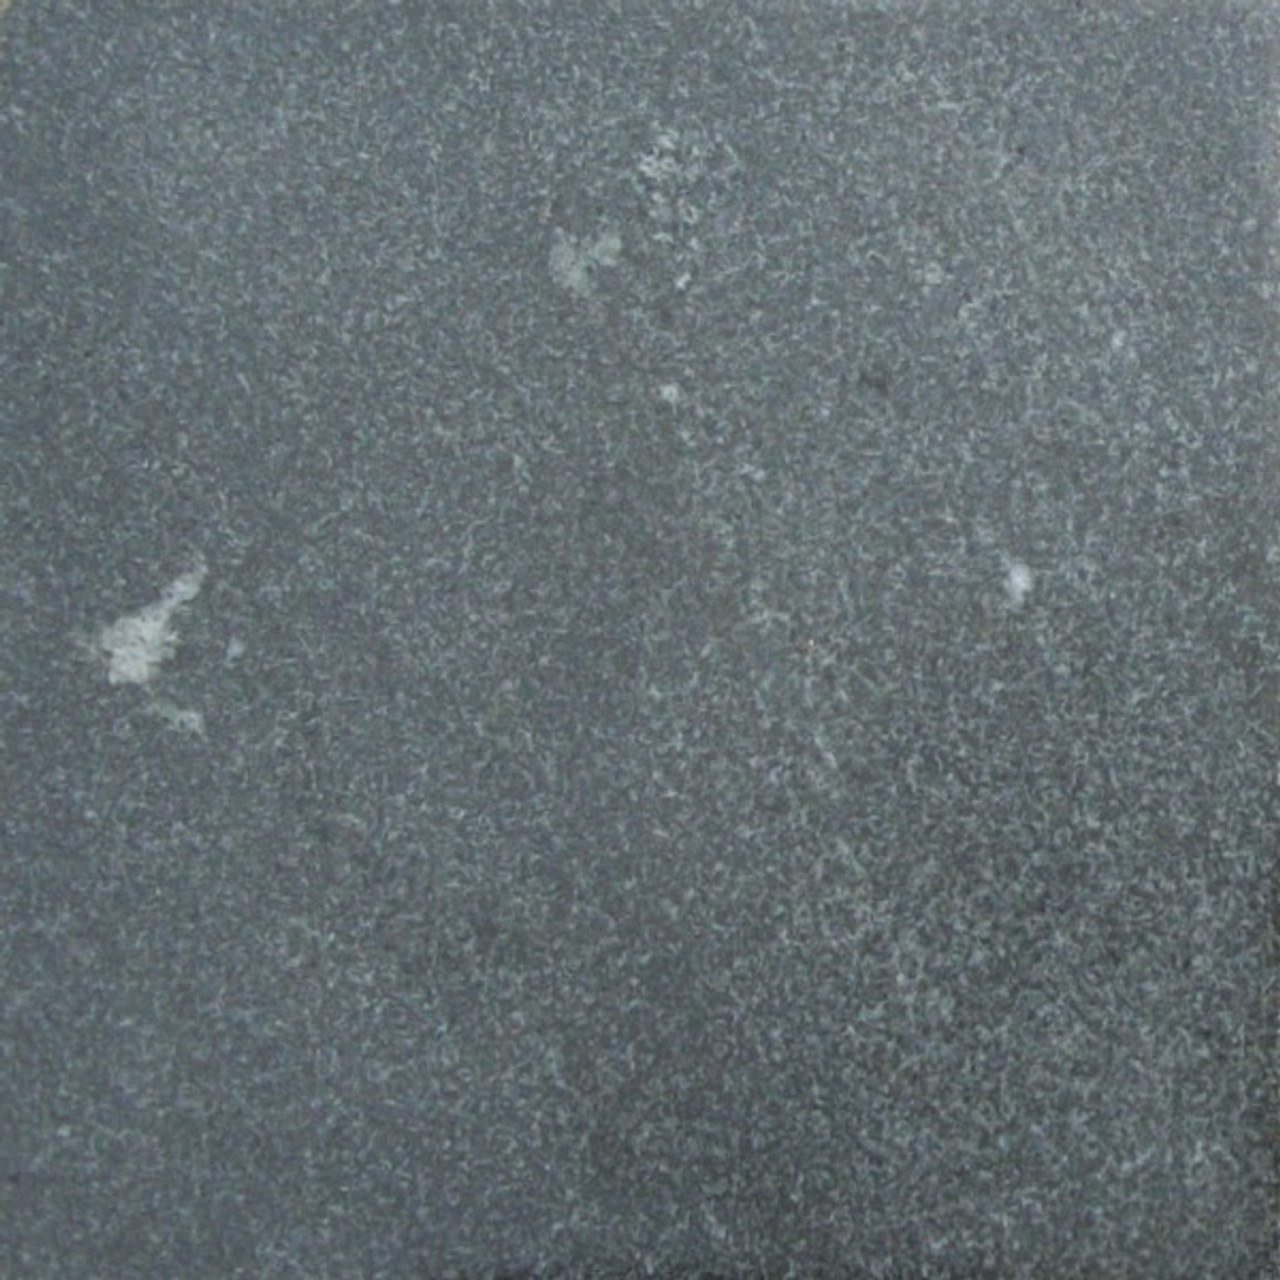 American Black Granite Sample - Honed / Thermal